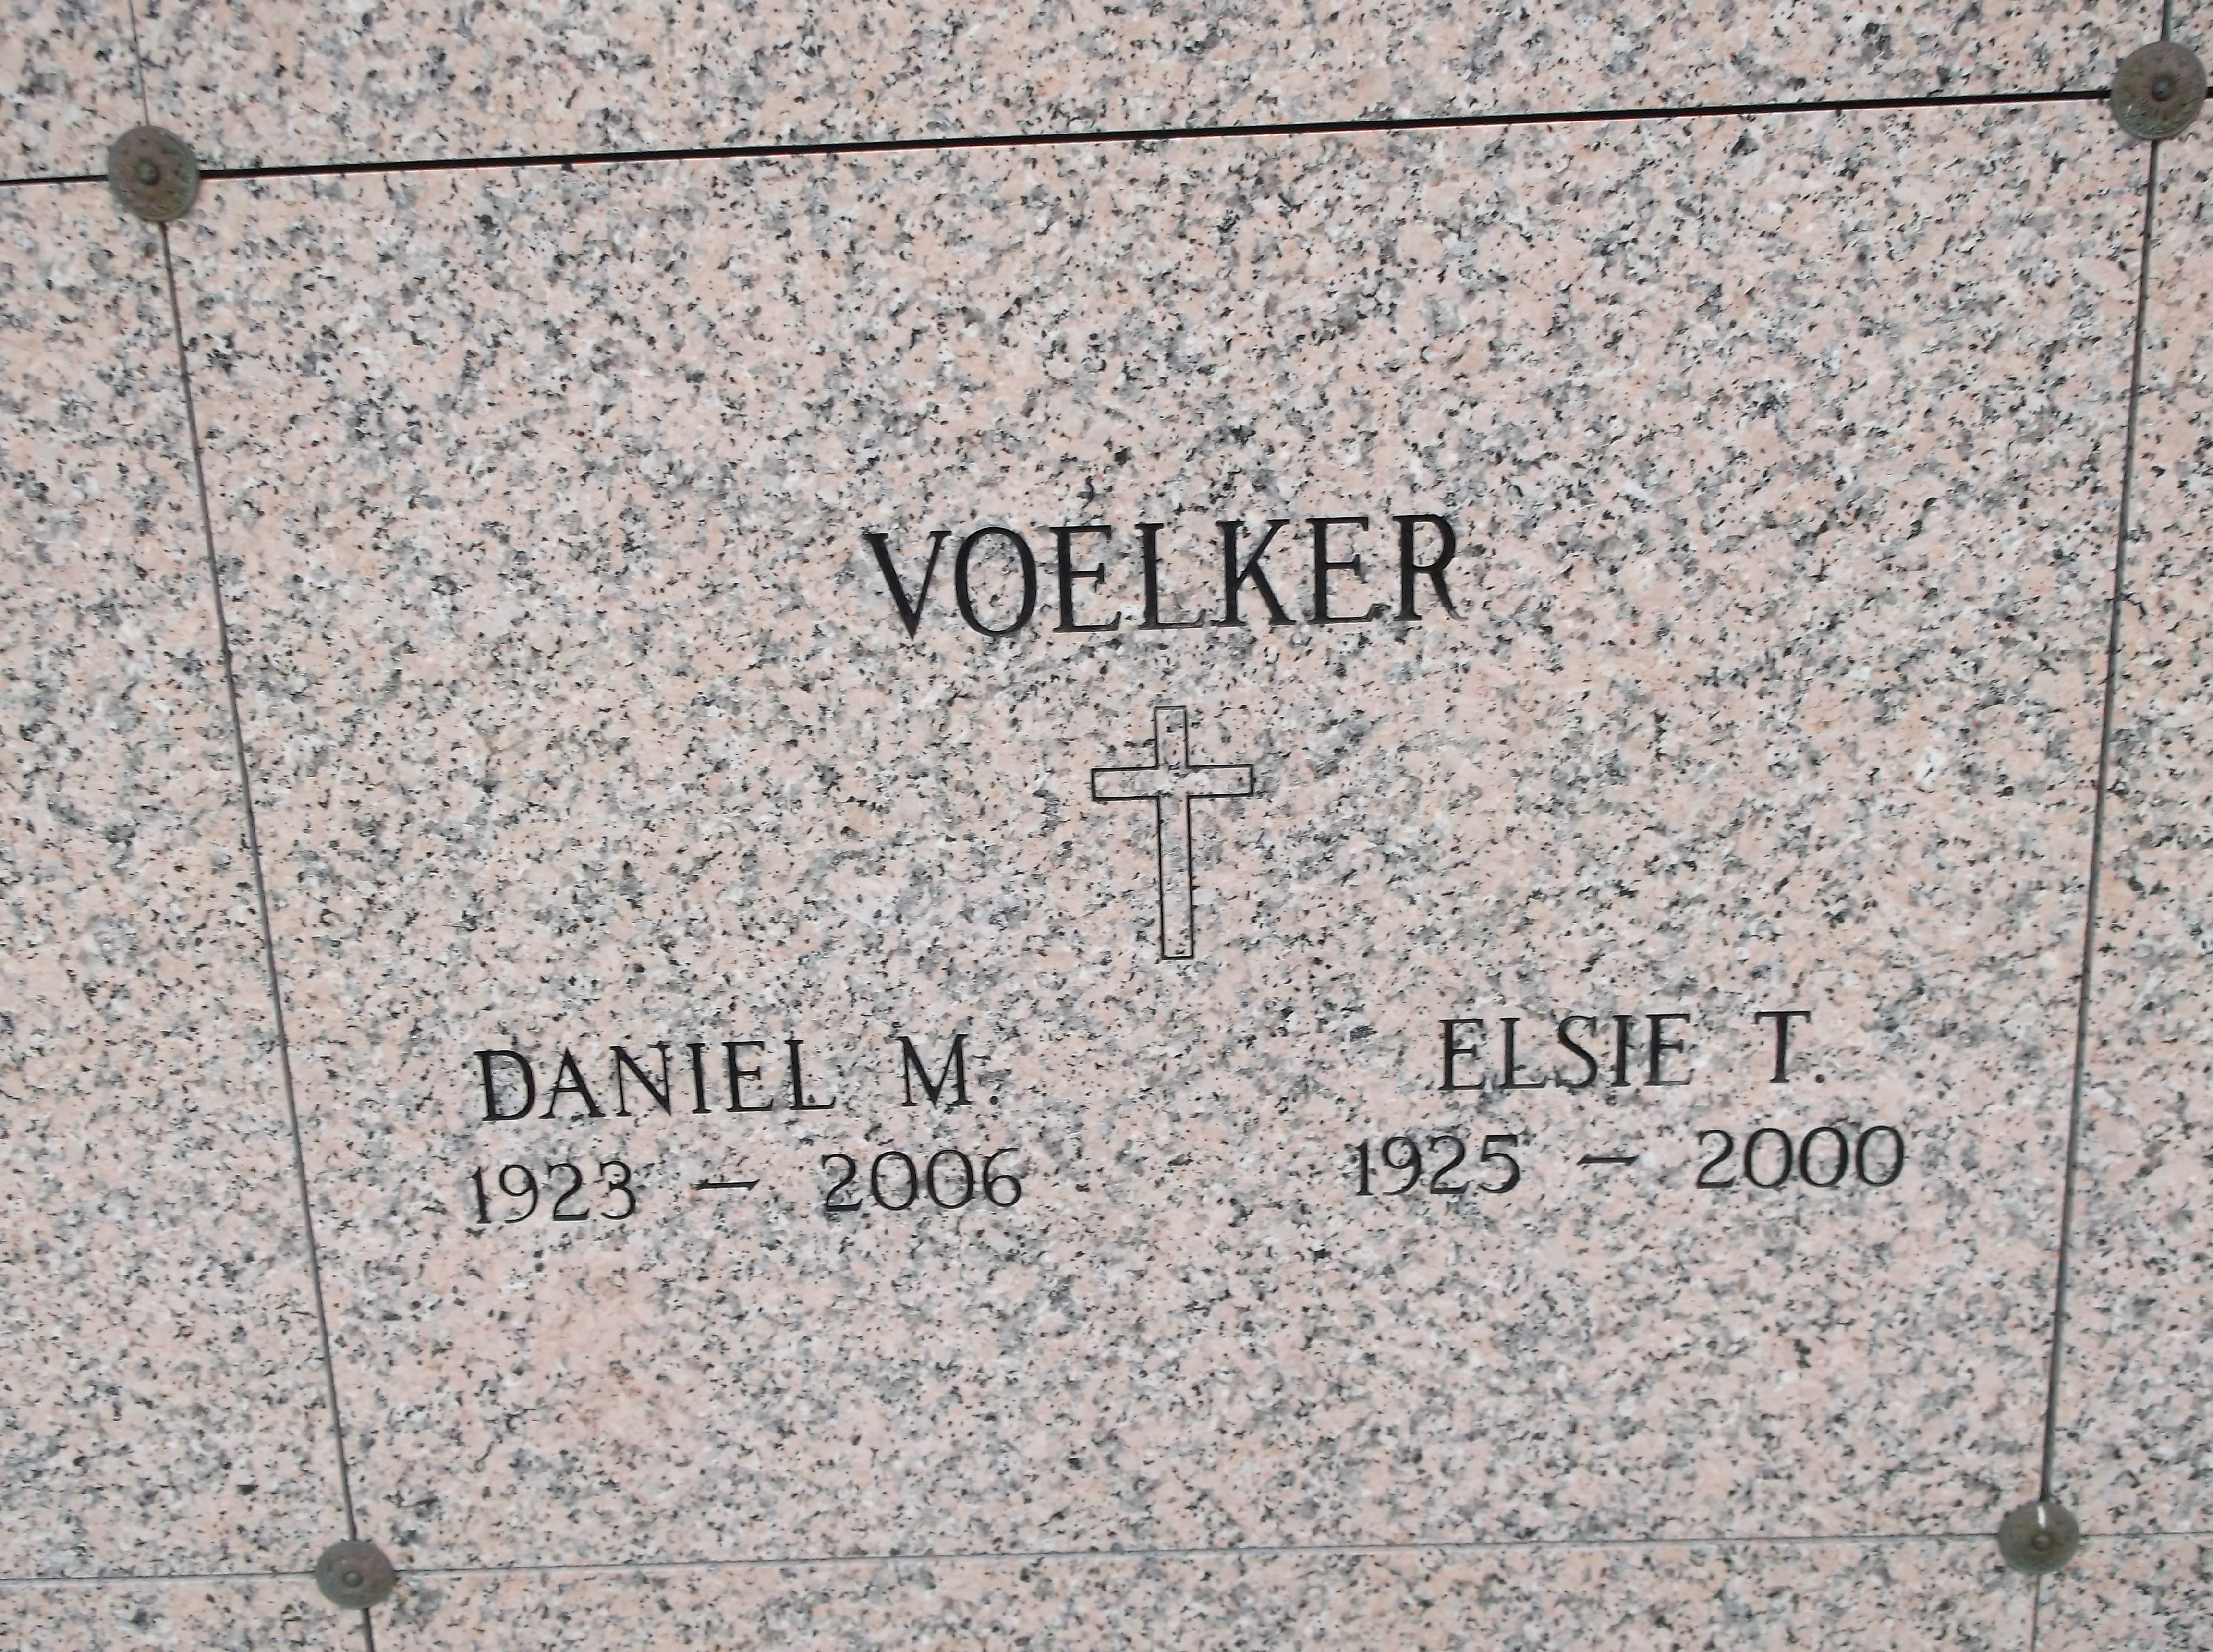 Daniel M Voelker